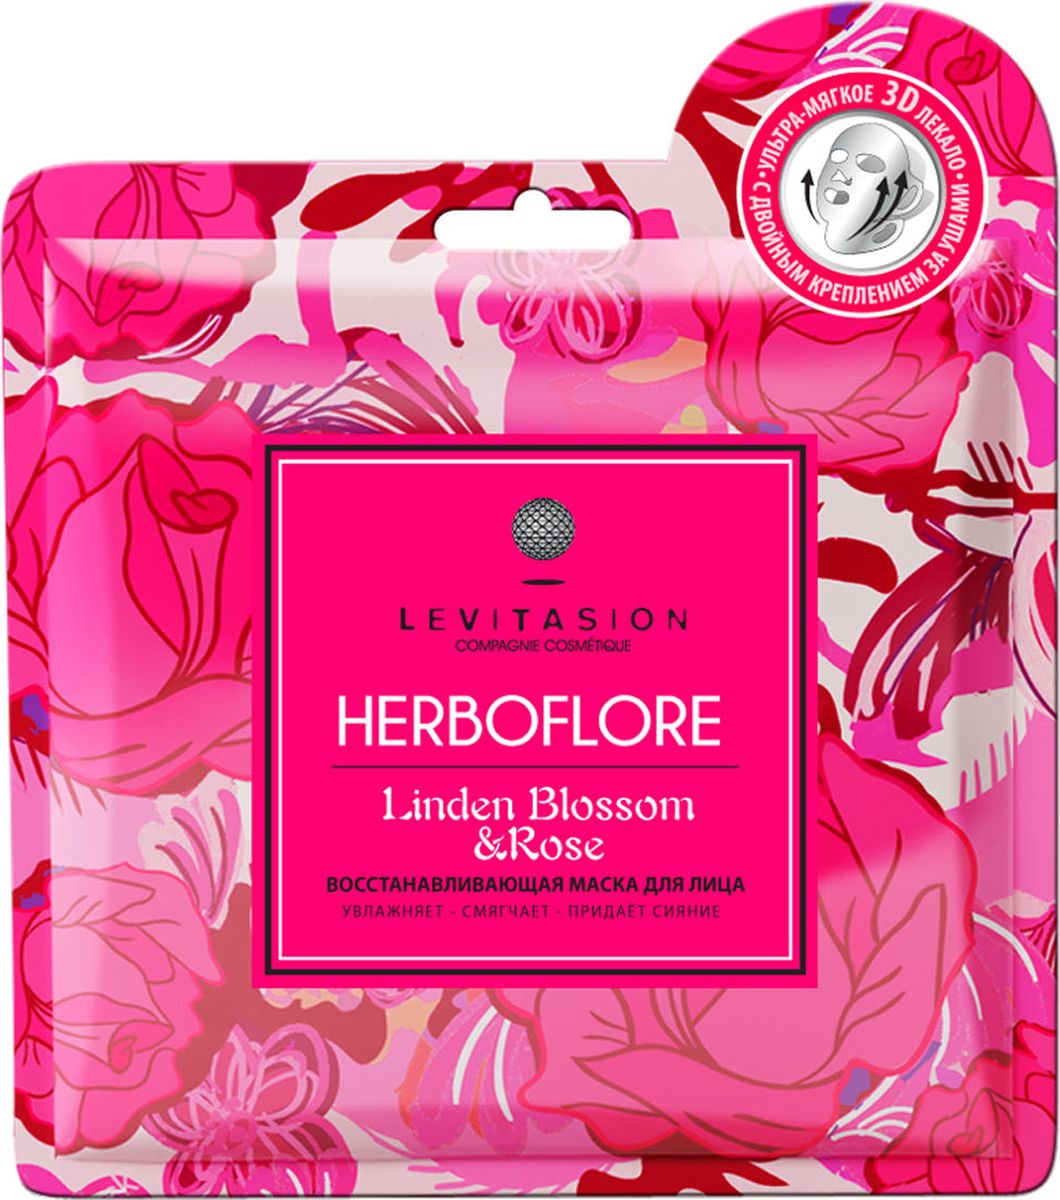 Levitasion Herboflore Маска для лица увлажняющая с липовым цветом и розой, 35 мл